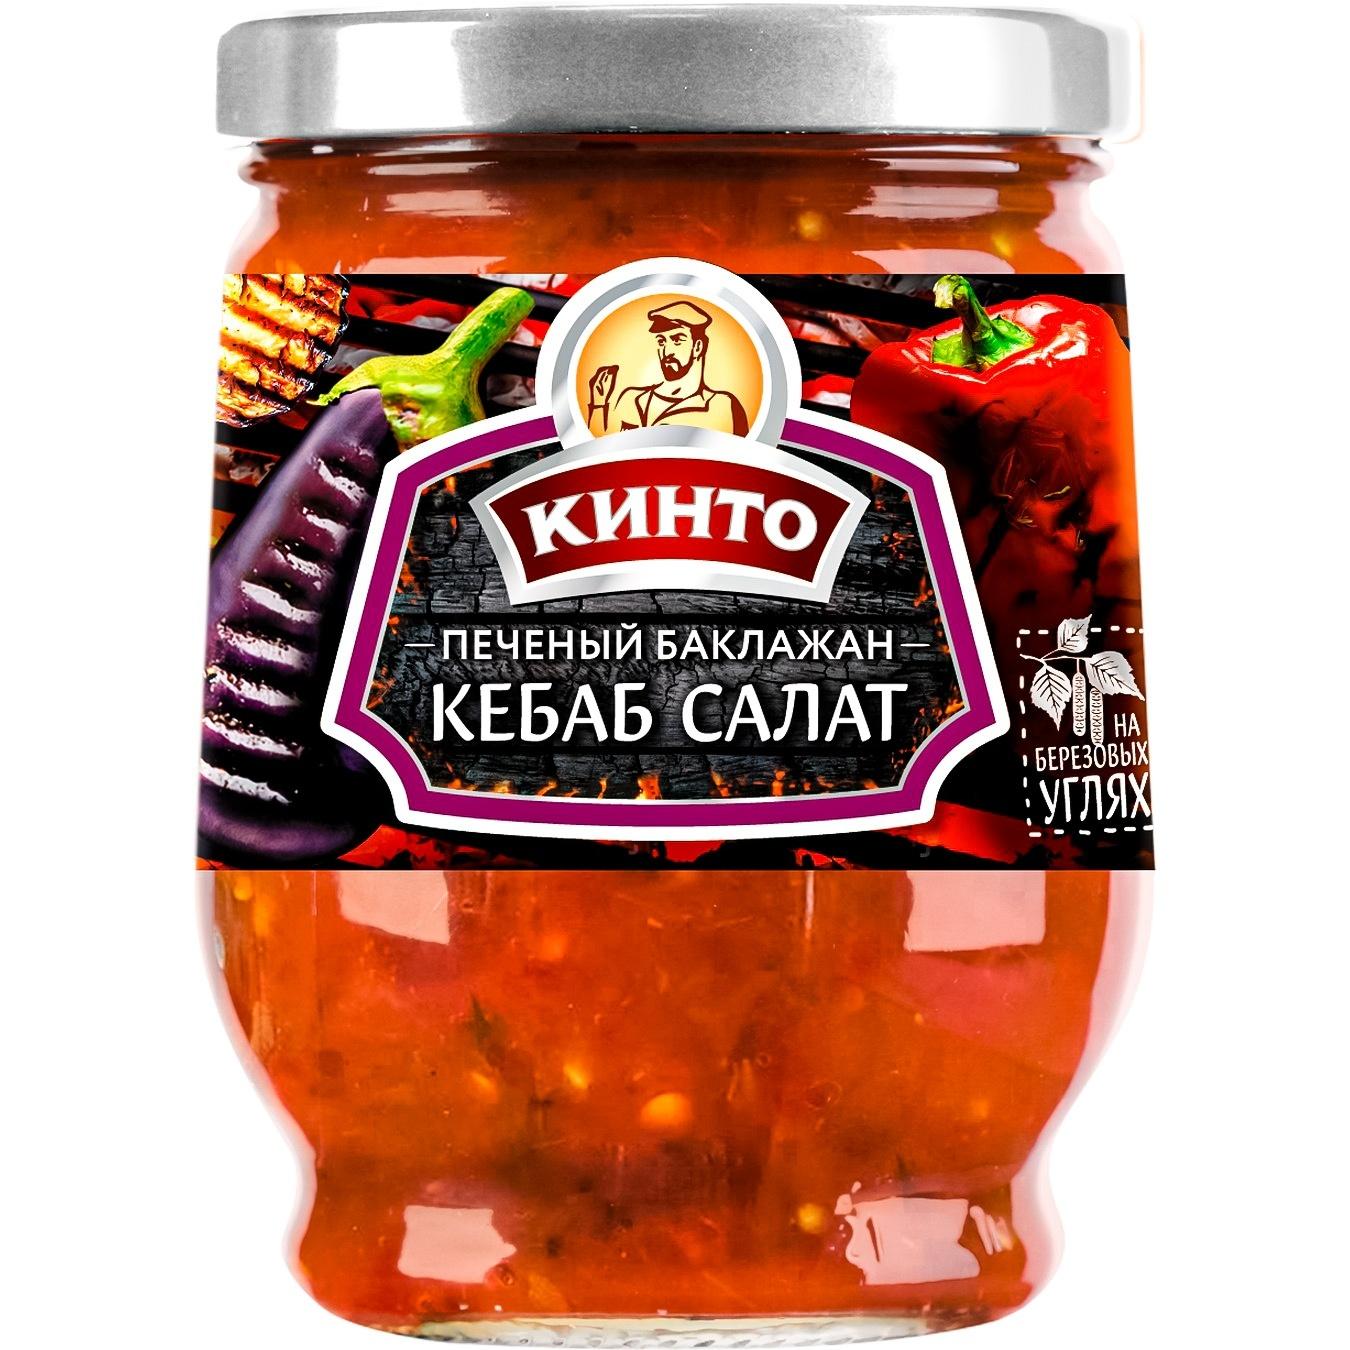 Кебаб Кинто салат Печеный баклажан 265 гр., стекло